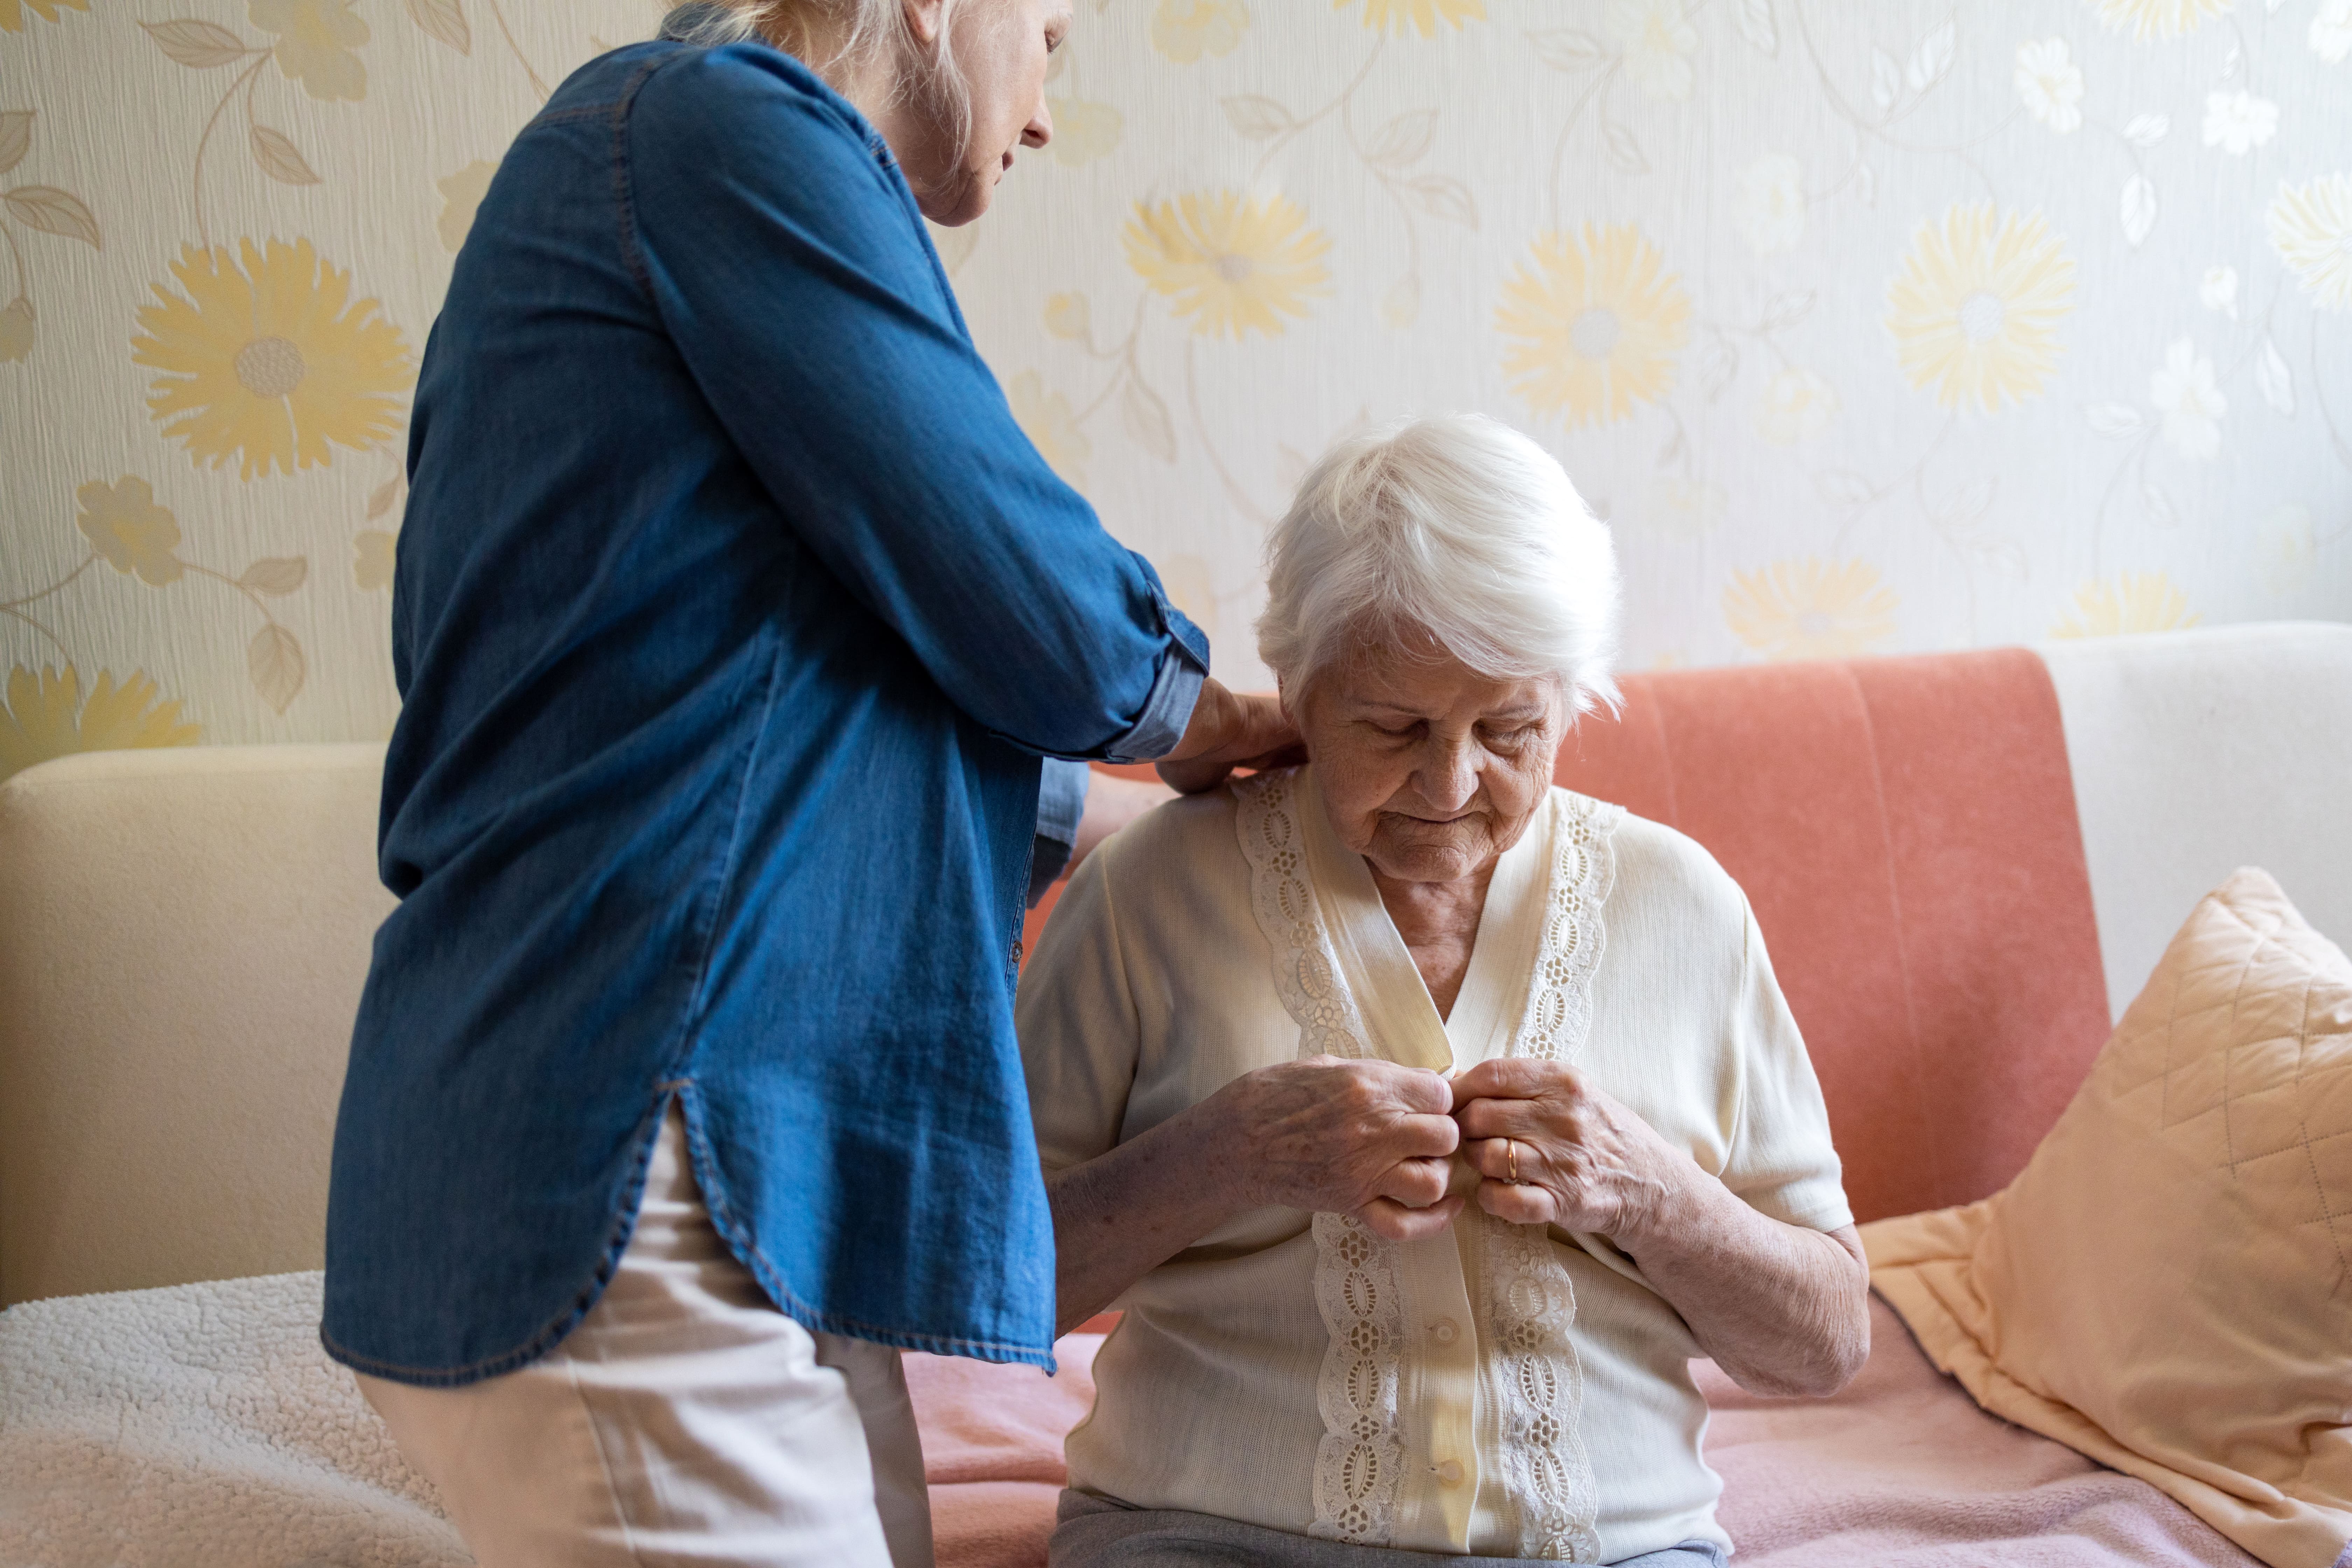 A caregiver helping an older adult get dressed